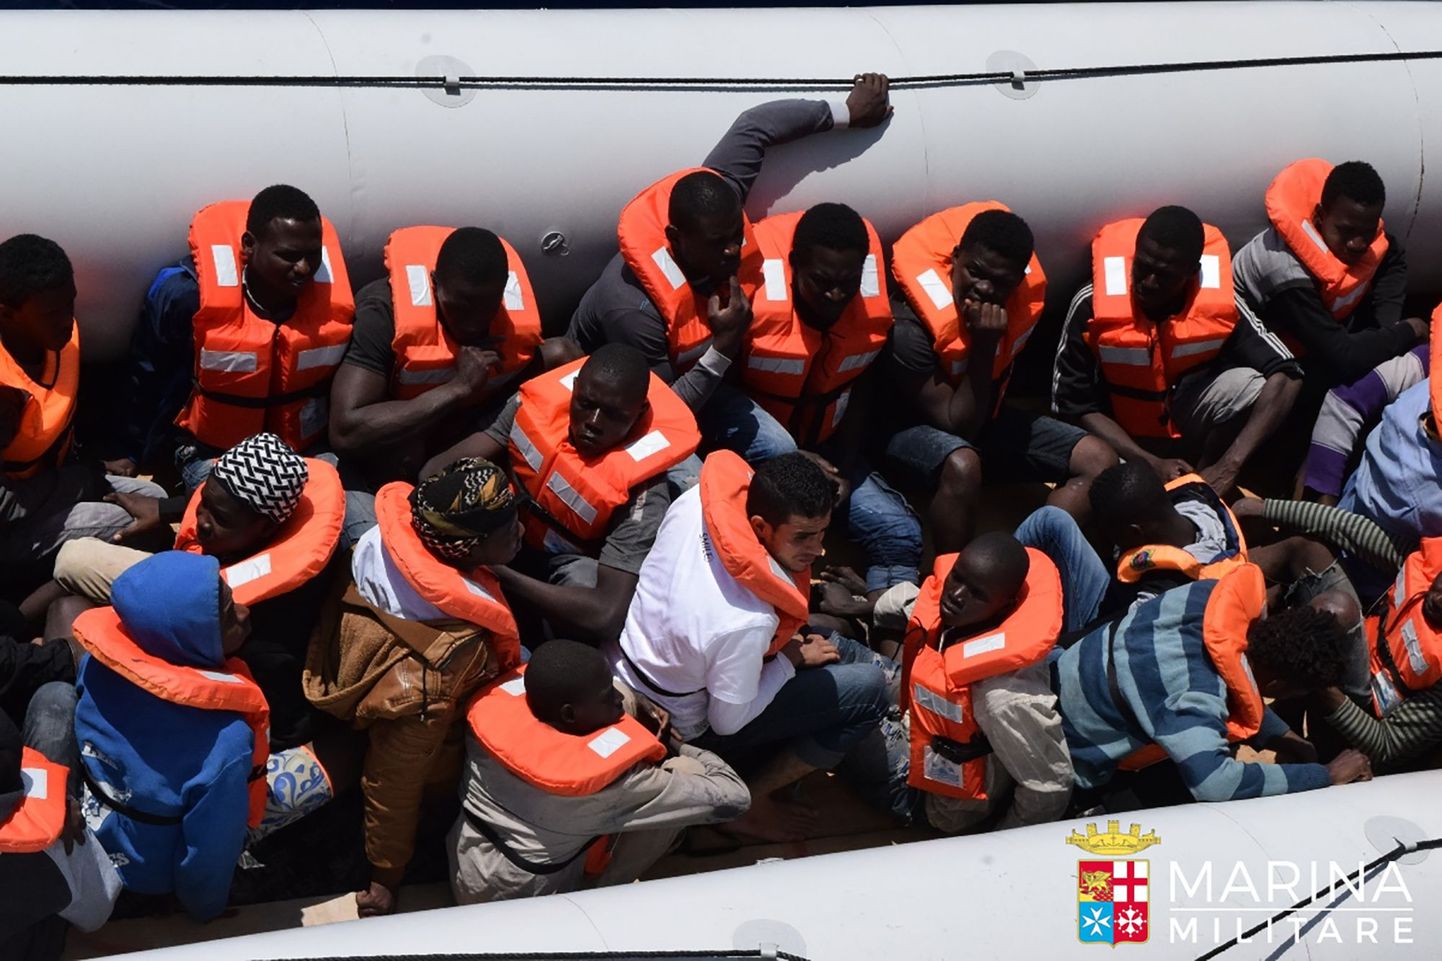 Itaalia mereväe poolt päästetud põgenikud Liibüa ranniku lähedal